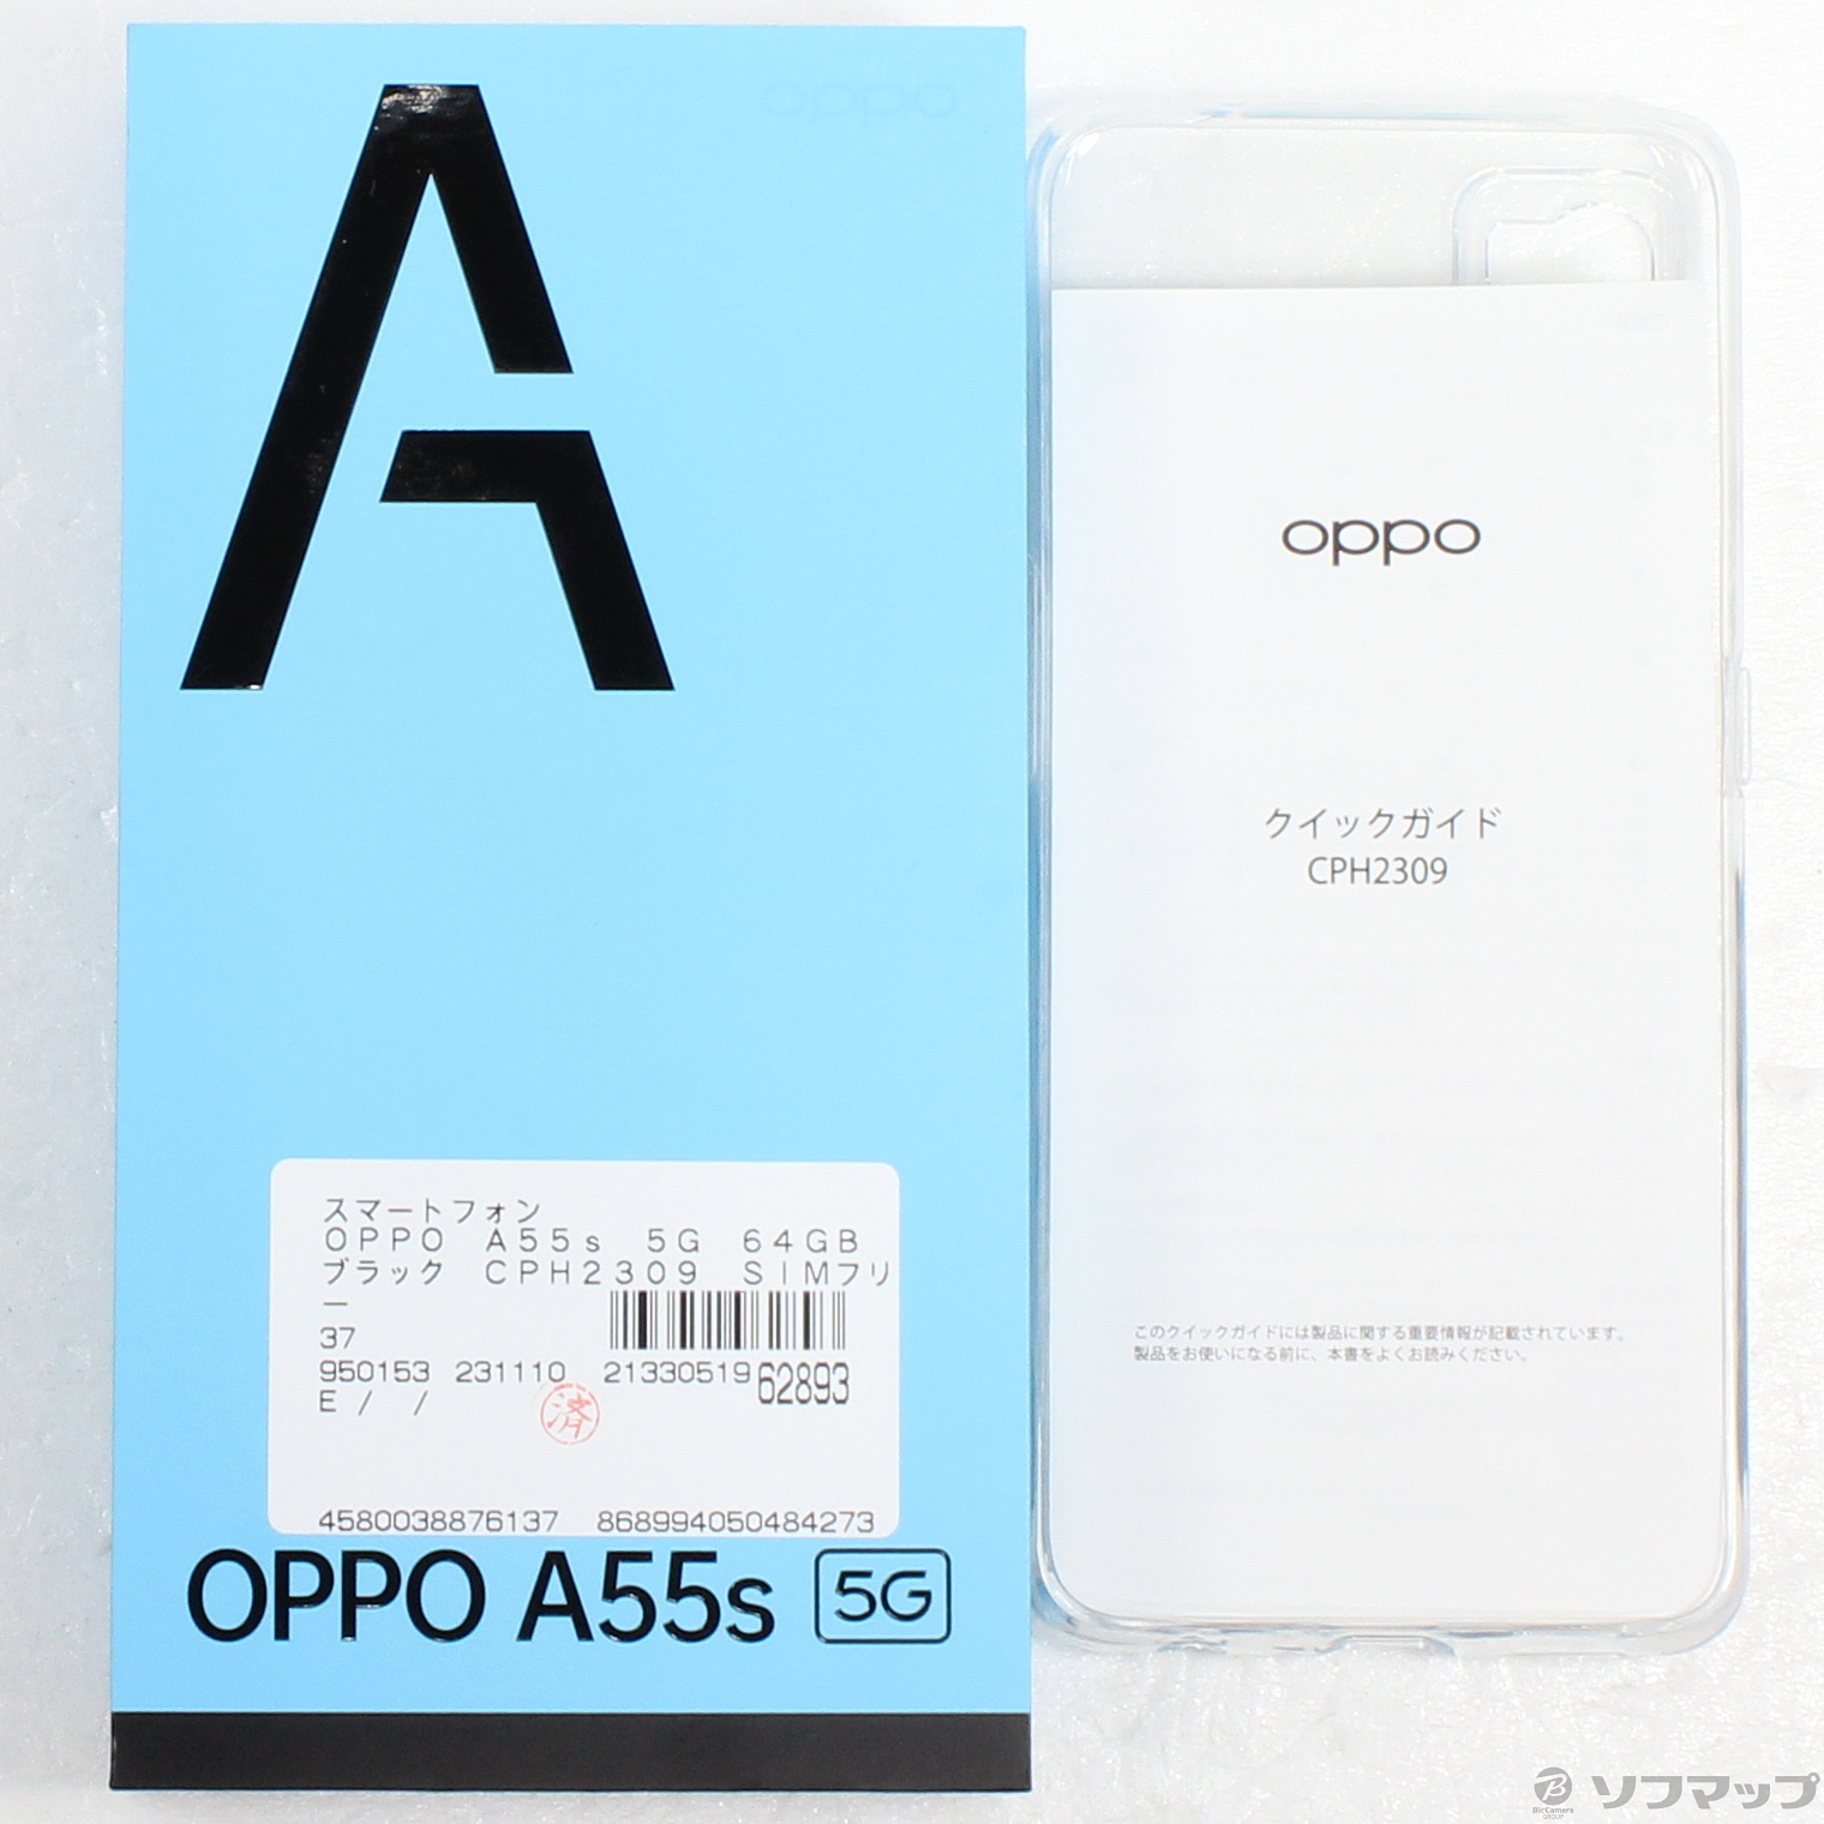 中古】OPPO A55s 5G 64GB ブラック CPH2309 SIMフリー [2133051962893